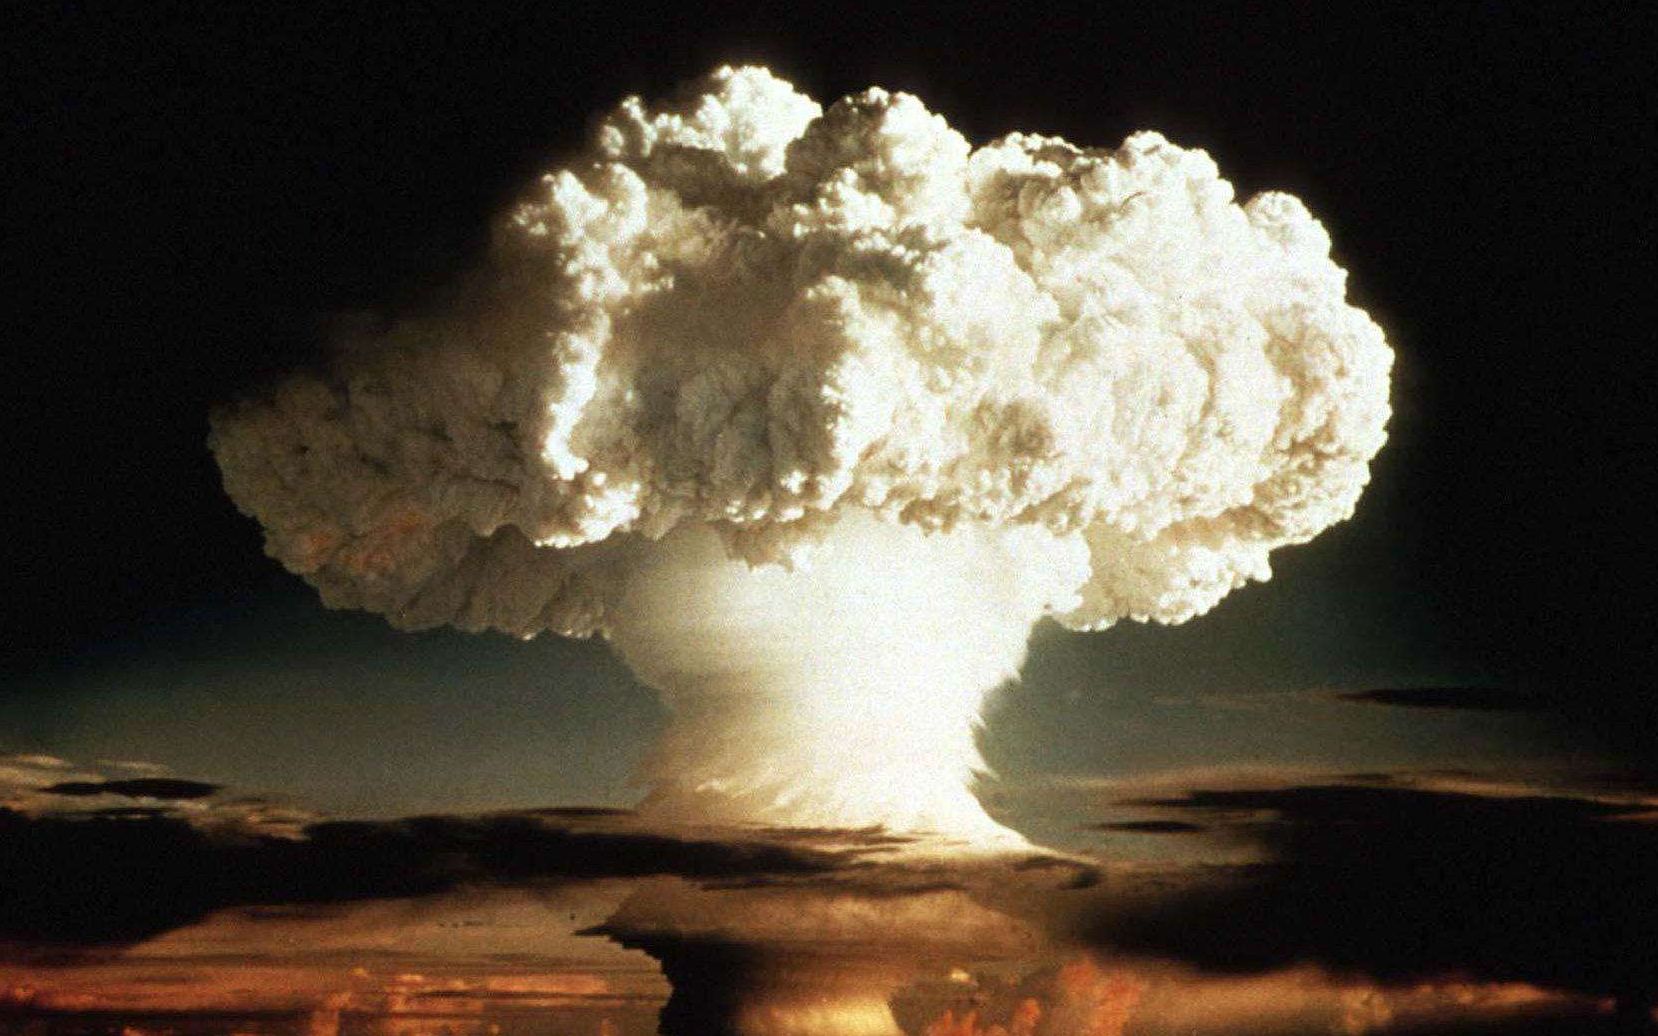 俄罗斯近日解密史上威力最大的核弹,沙皇炸弹试爆的影像曝光!